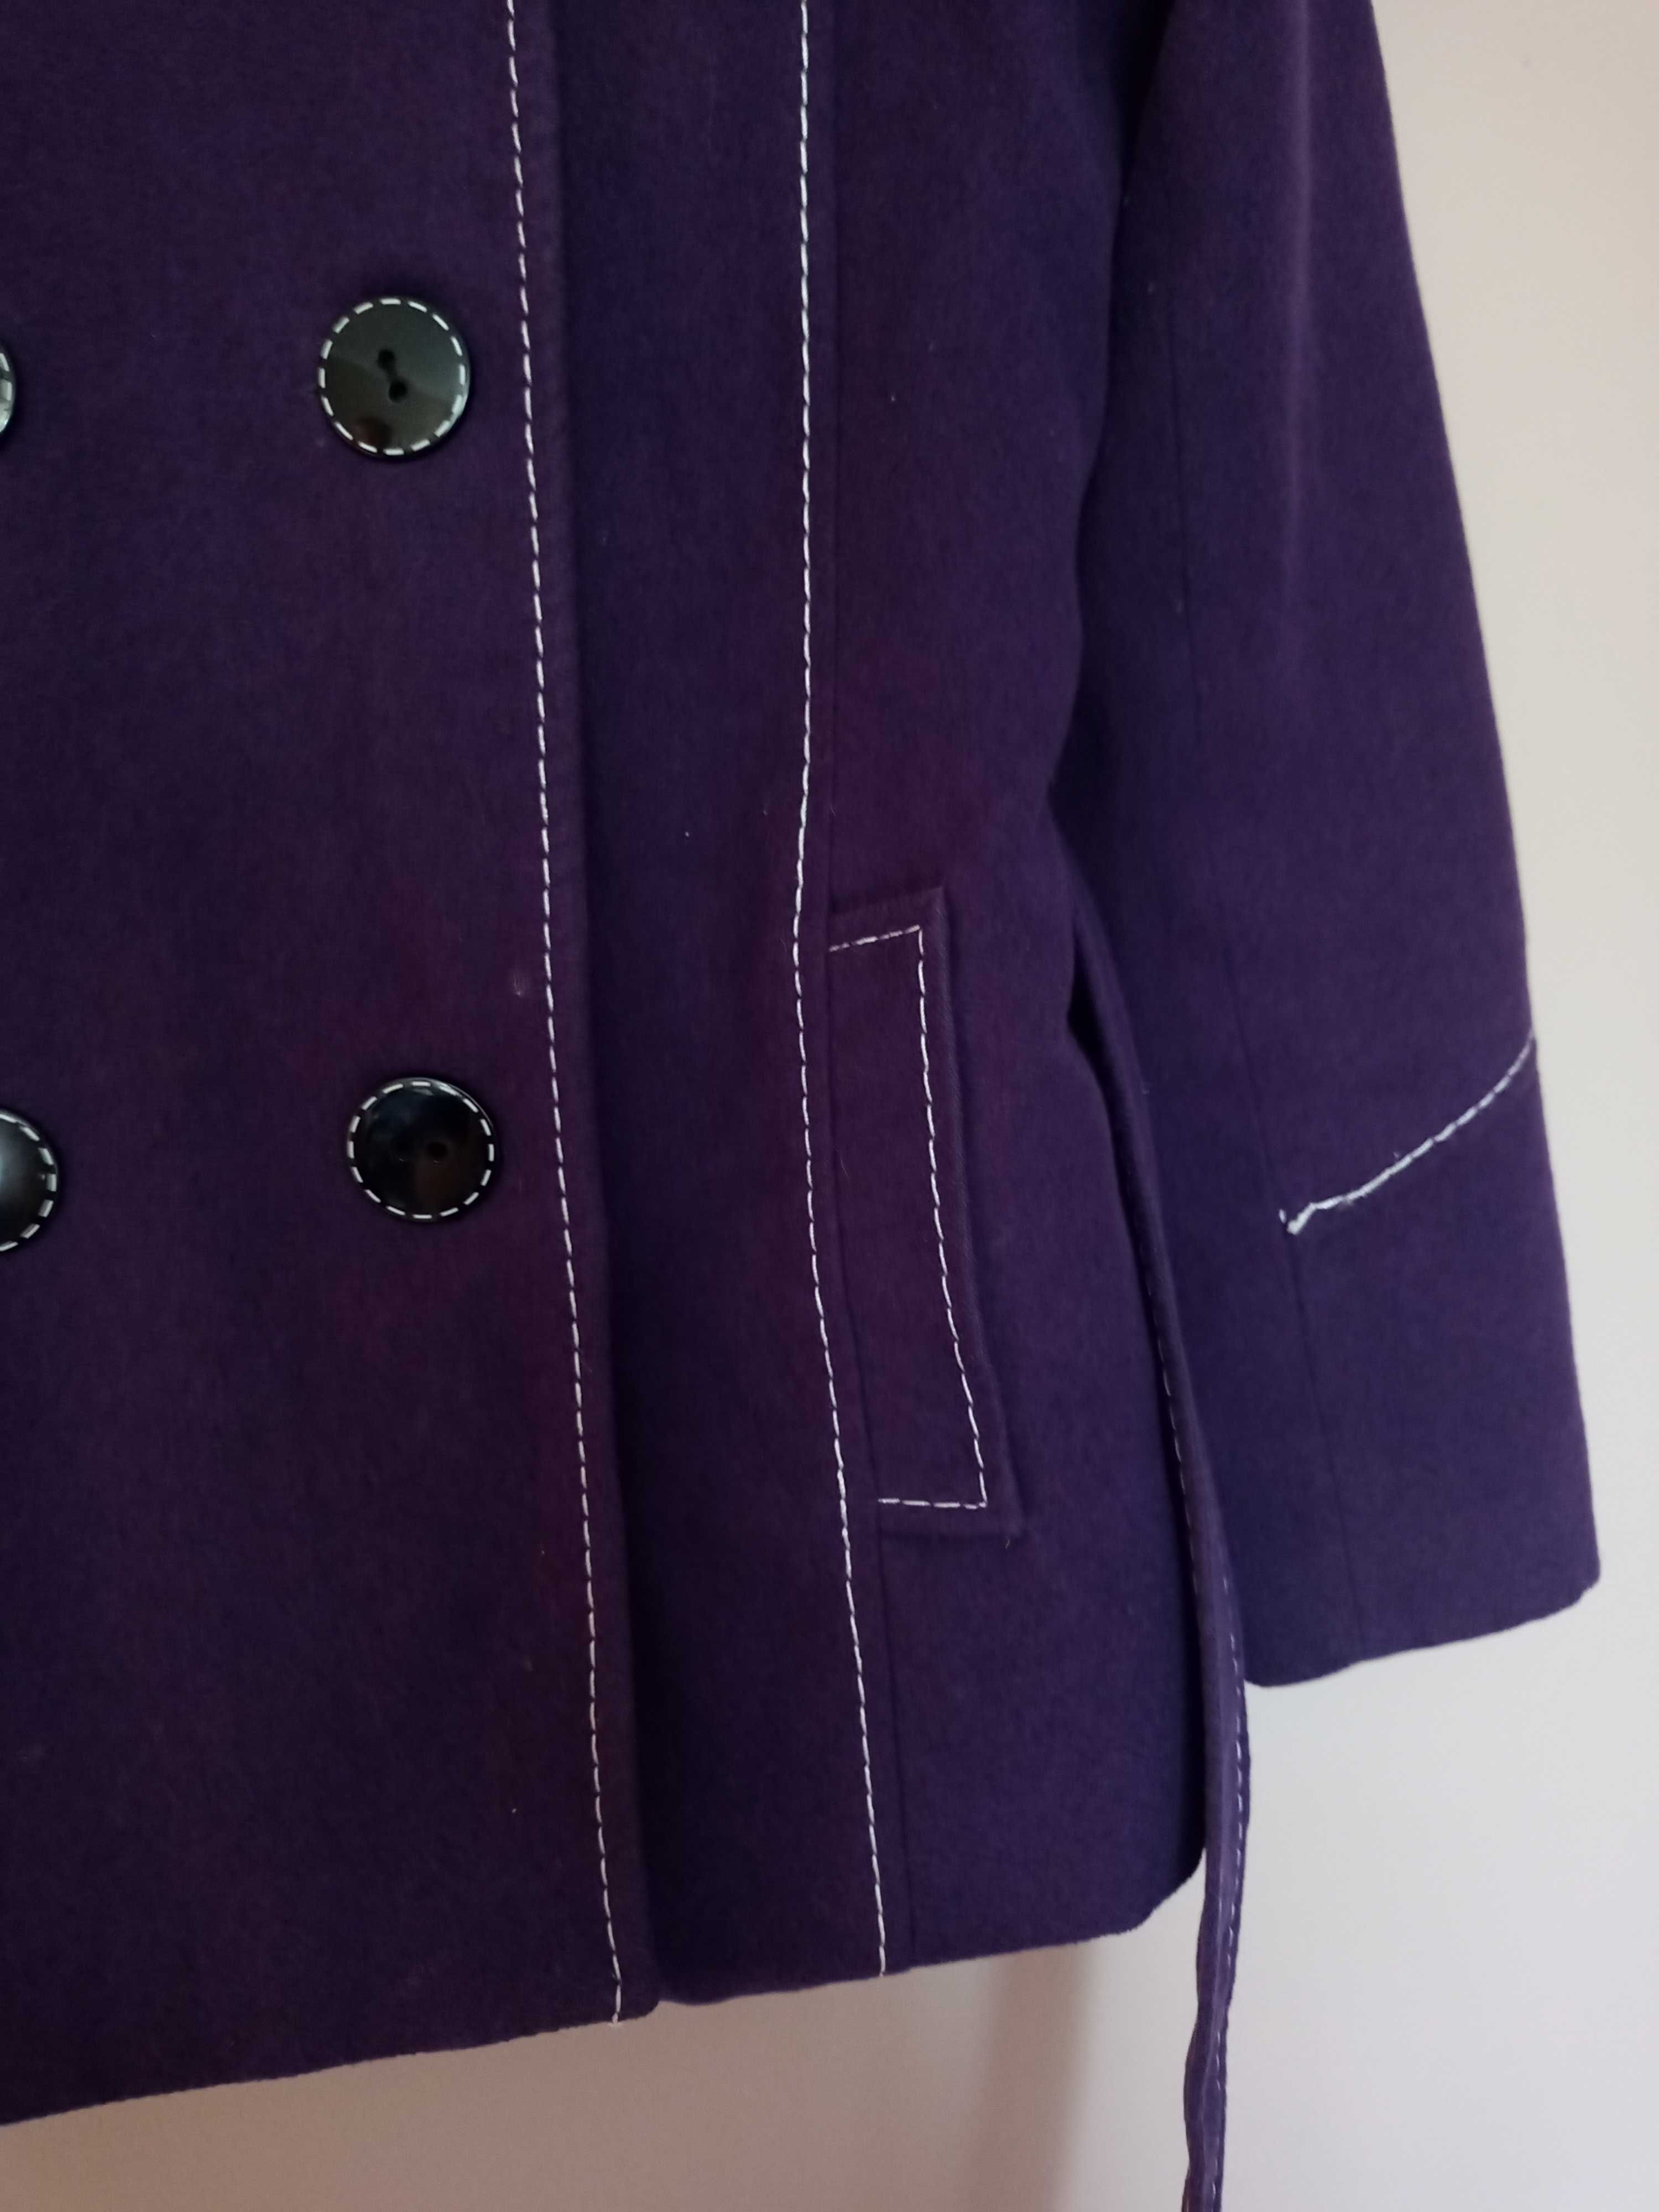 fioletowy płaszcz z kapturem fiolet płaszcyzk zimowy S M